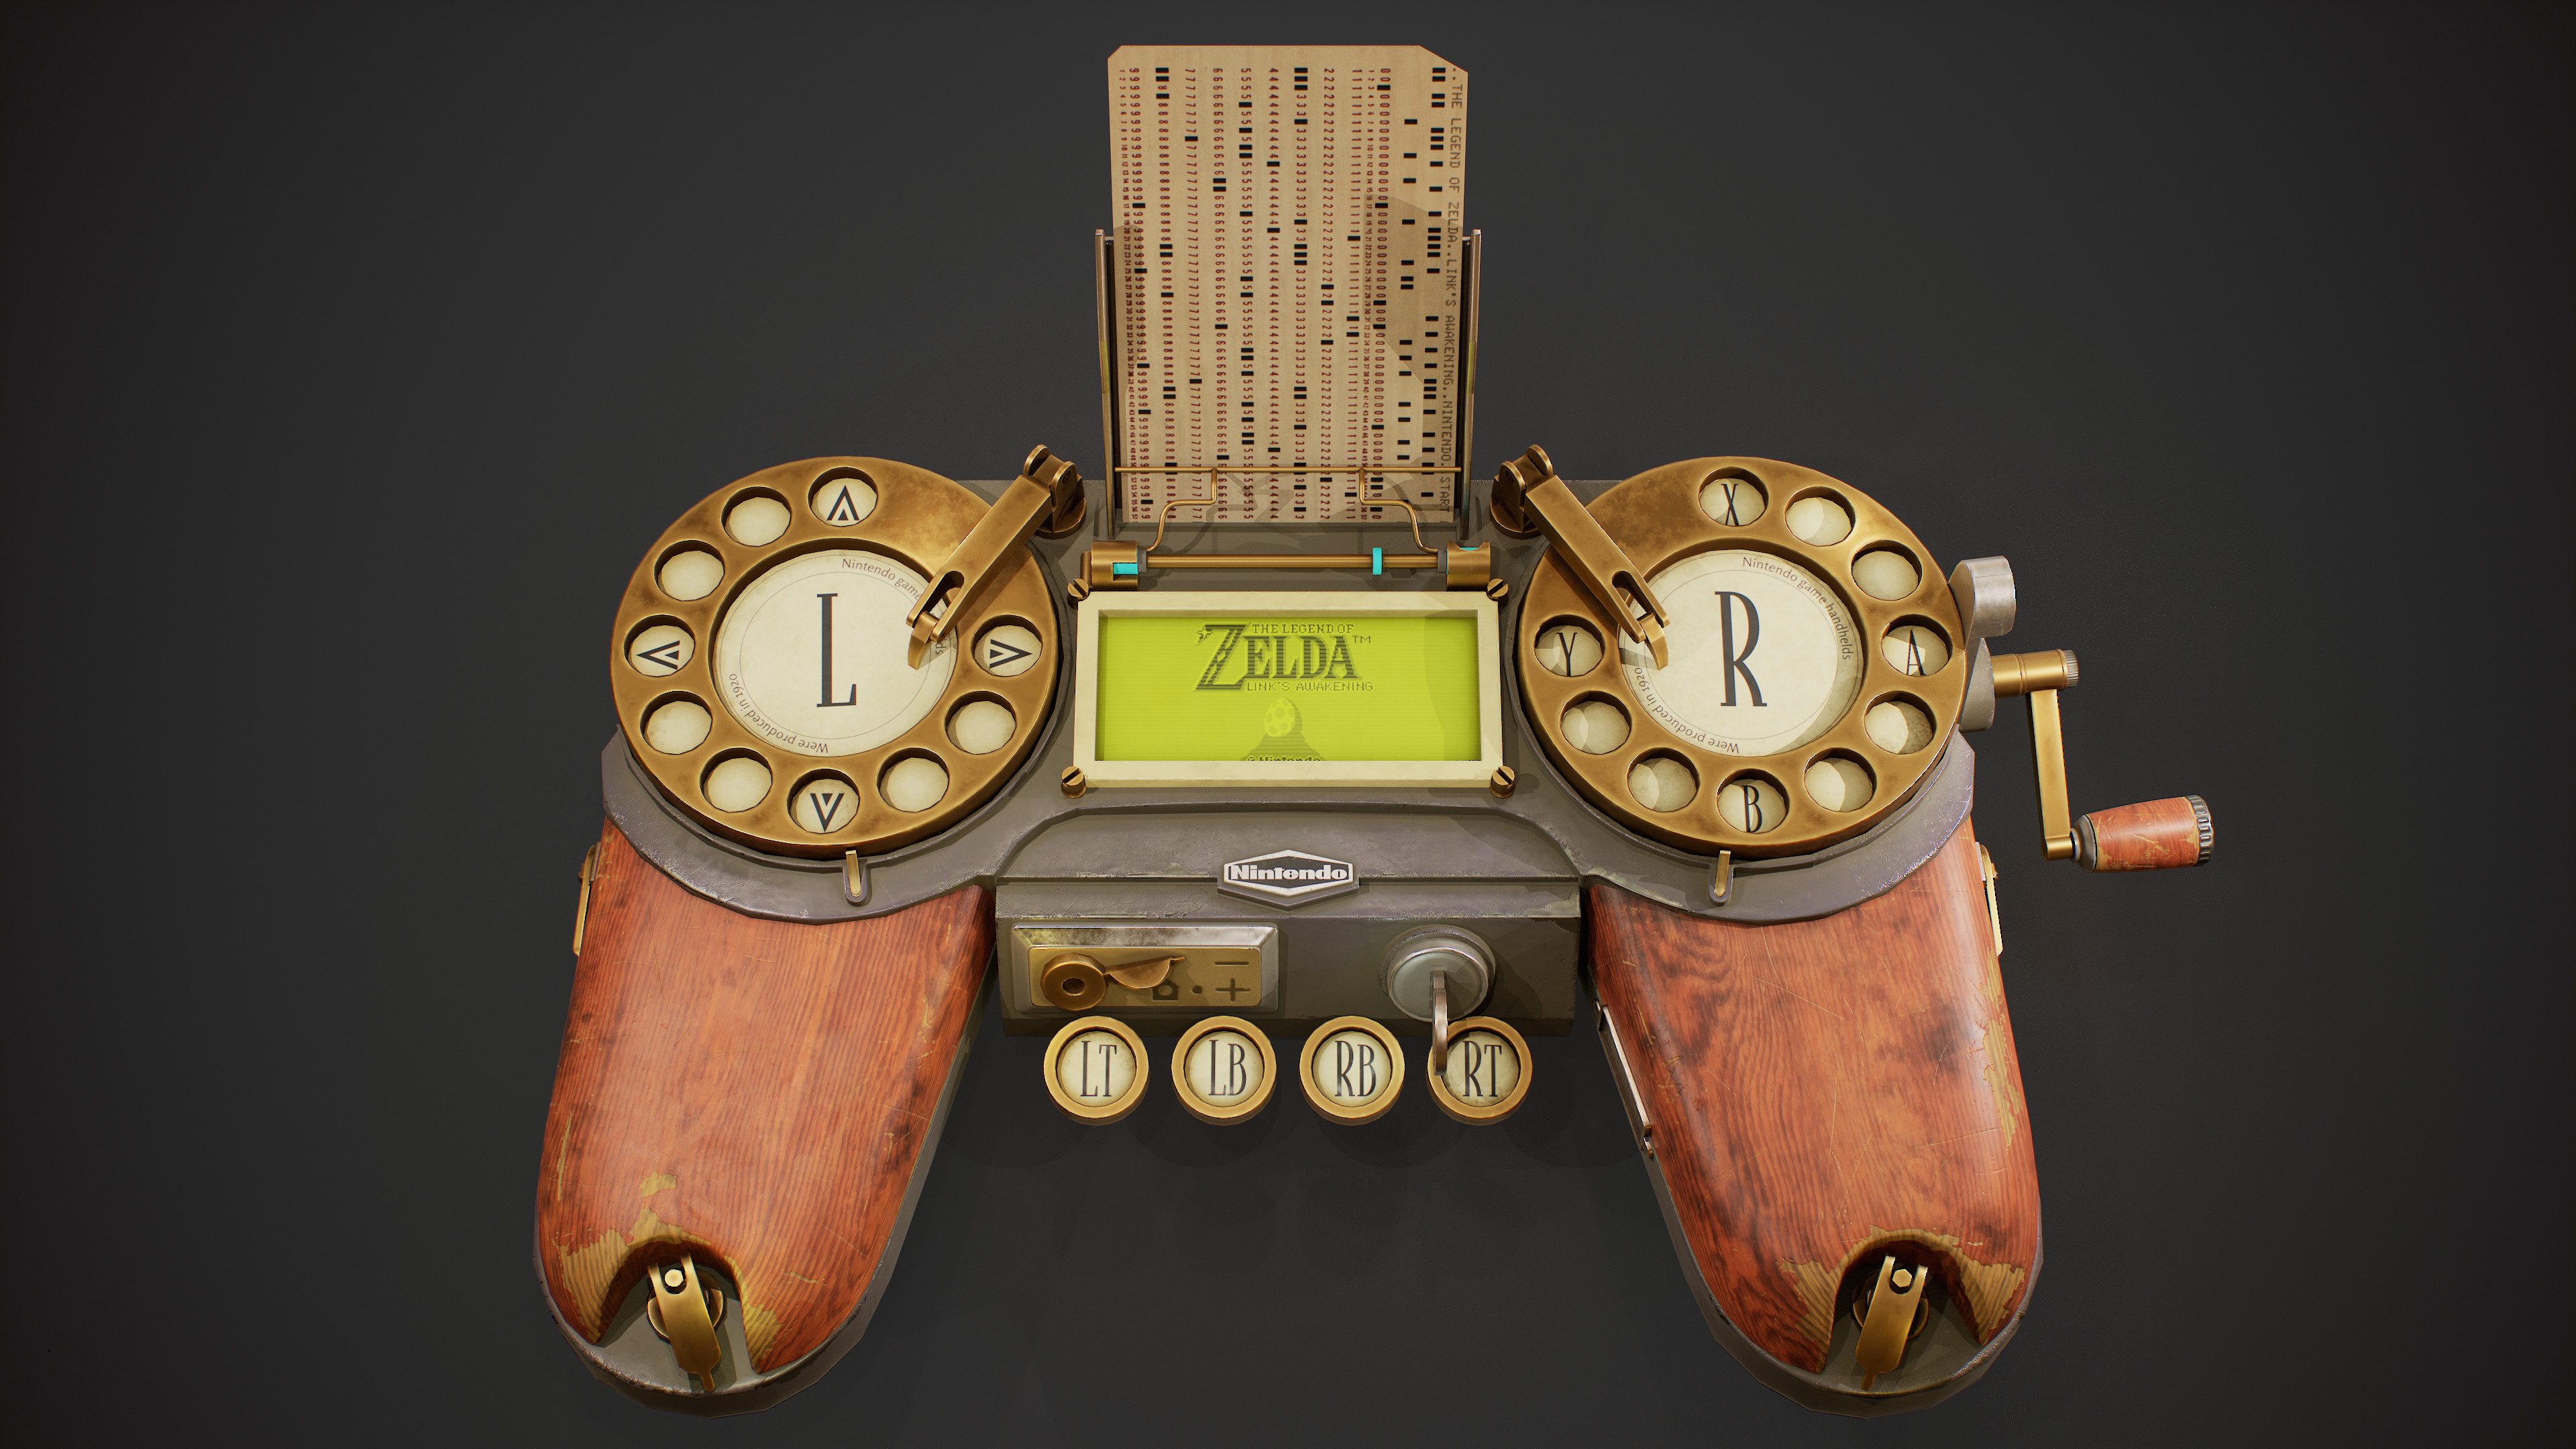 ArtStation - Nintendo Game & Watch - Zelda